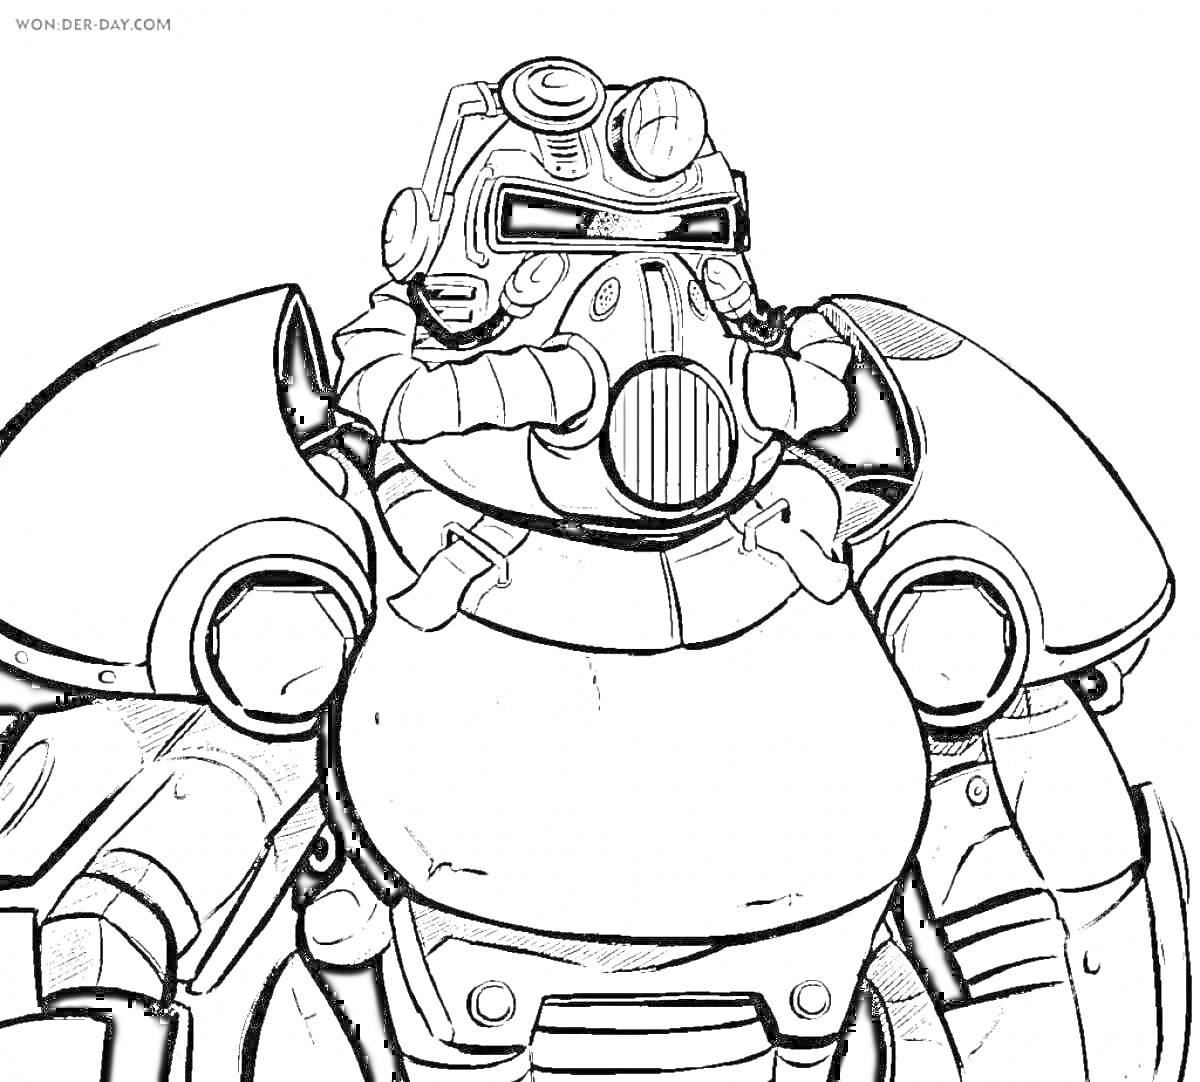 РаскраскаСолдат в силовой броне из Fallout с дыхательной маской, шлемом и бронепластинами. Черно-белая раскраска.